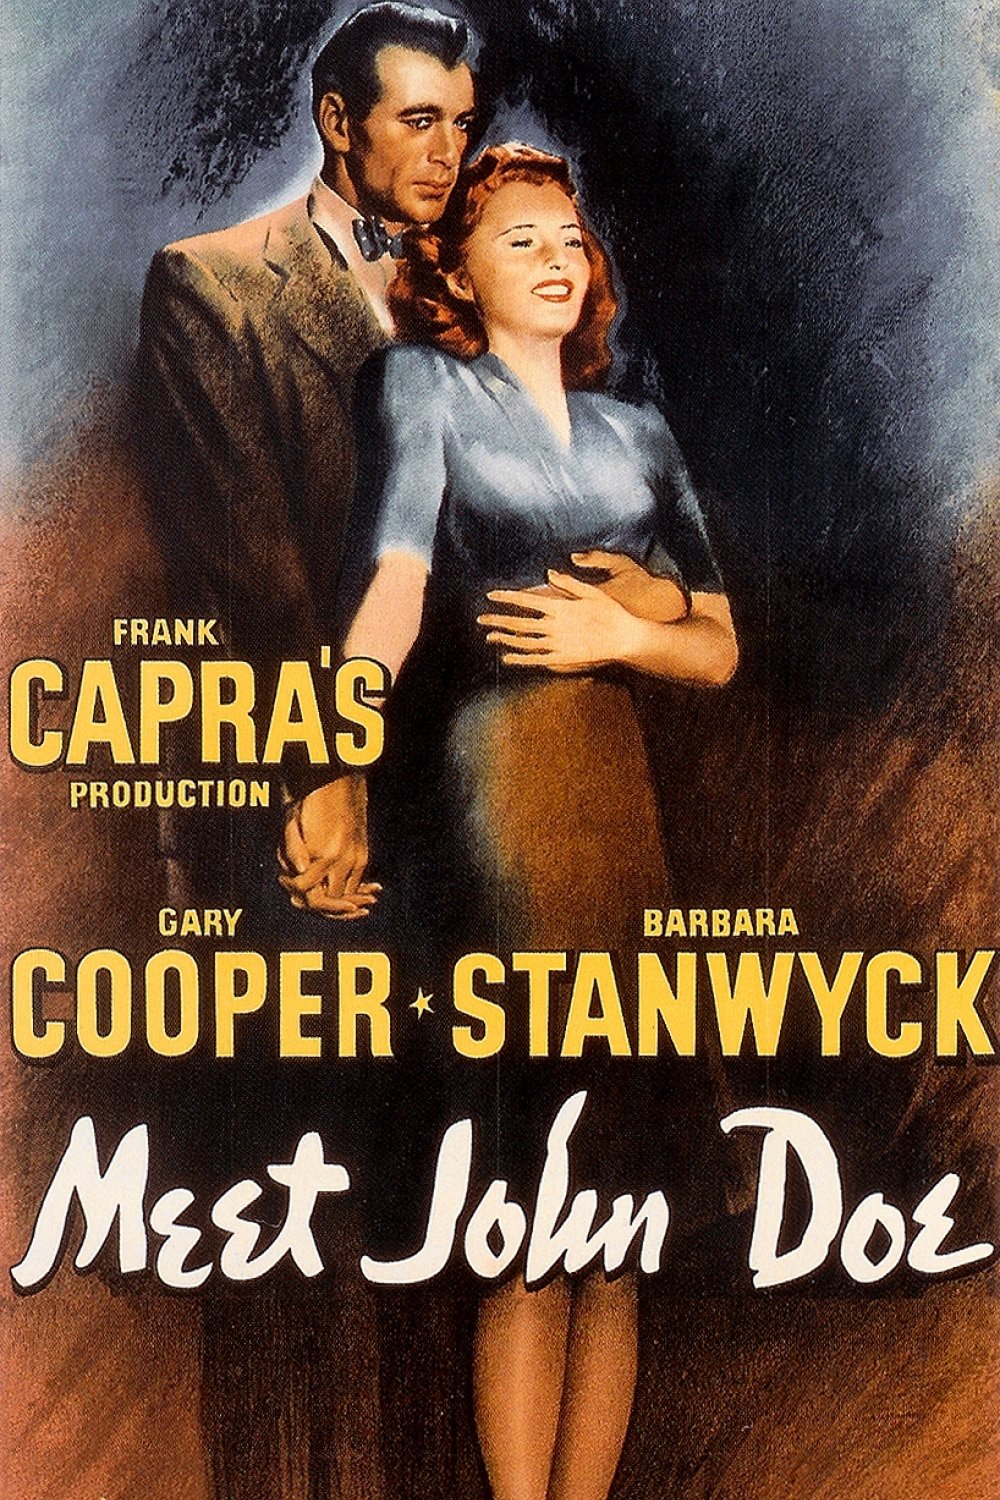 Poster for the movie "Meet John Doe"